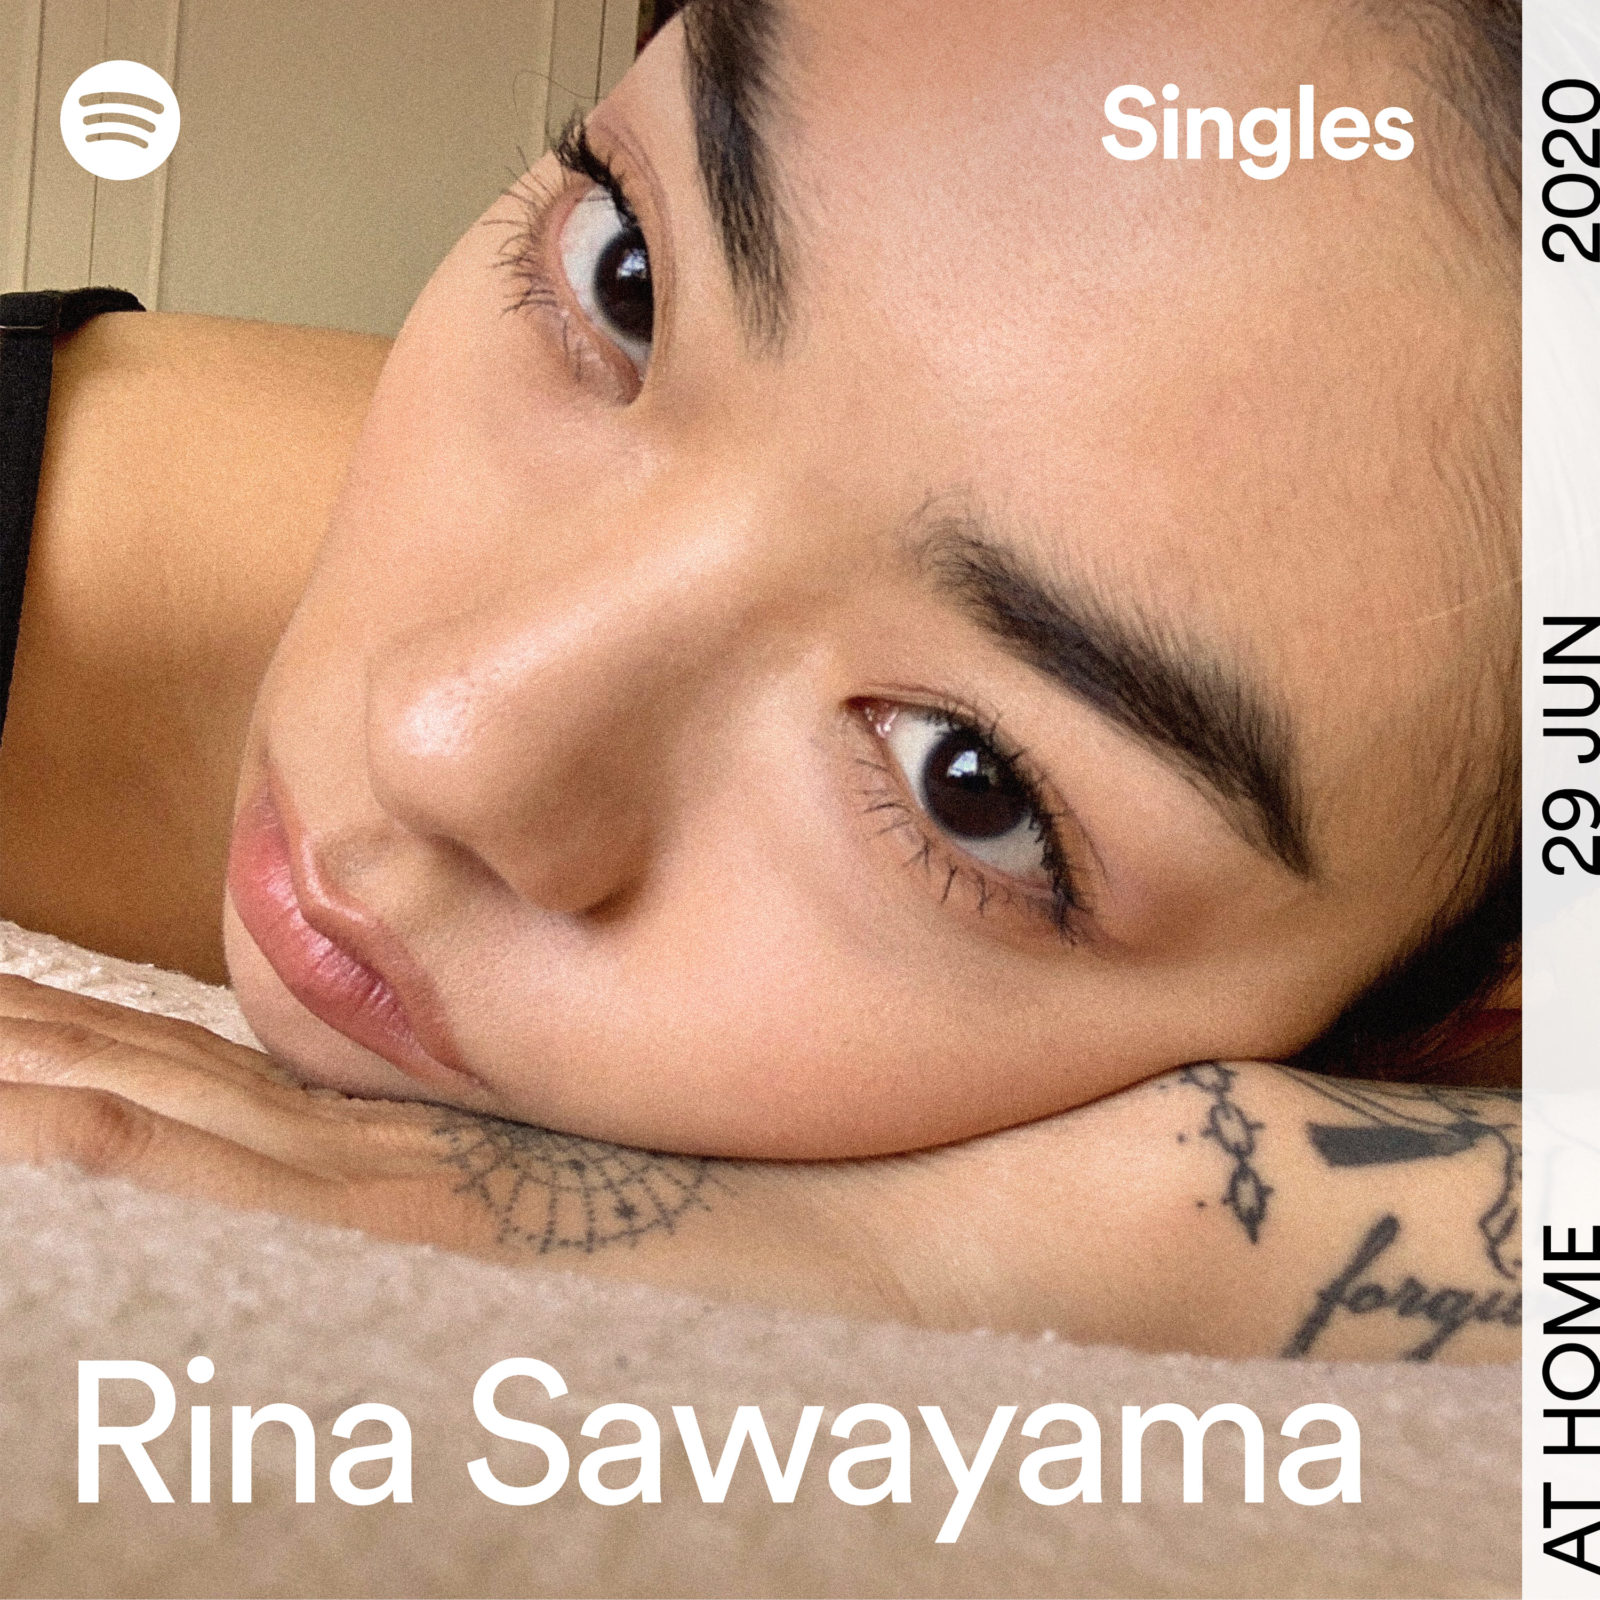 リナ・サワヤマ、Spotifyの人気プログラムでレディー・ガガの「Dance In The Dark」をカバーリリースサムネイル画像!